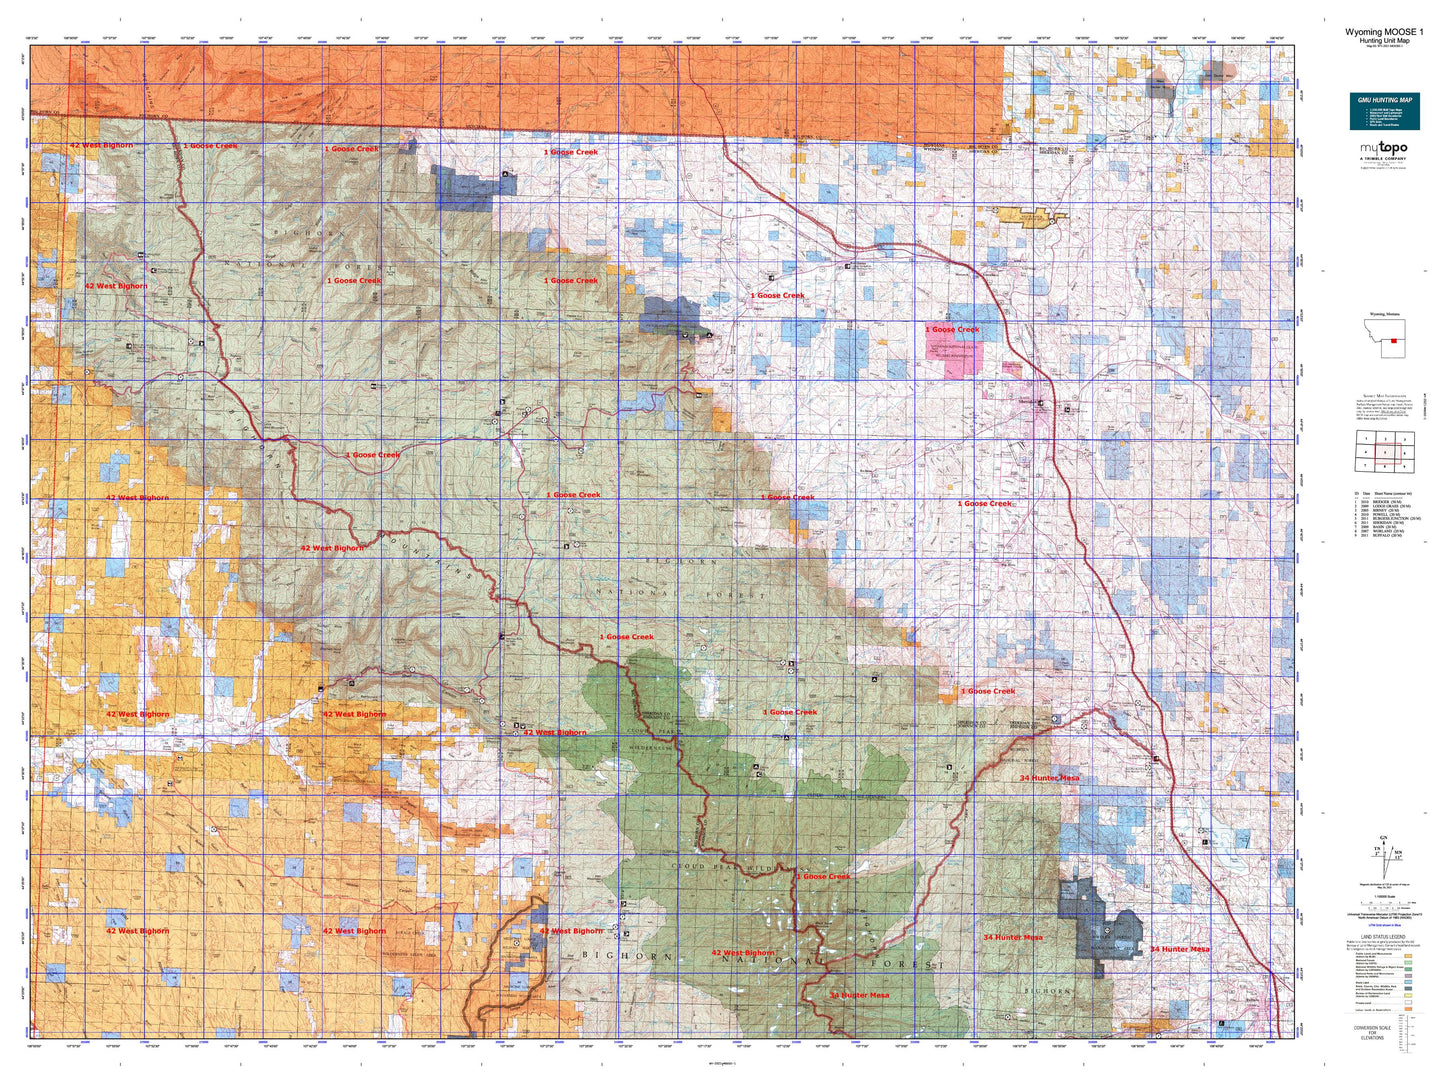 Wyoming Moose 1 Map Image